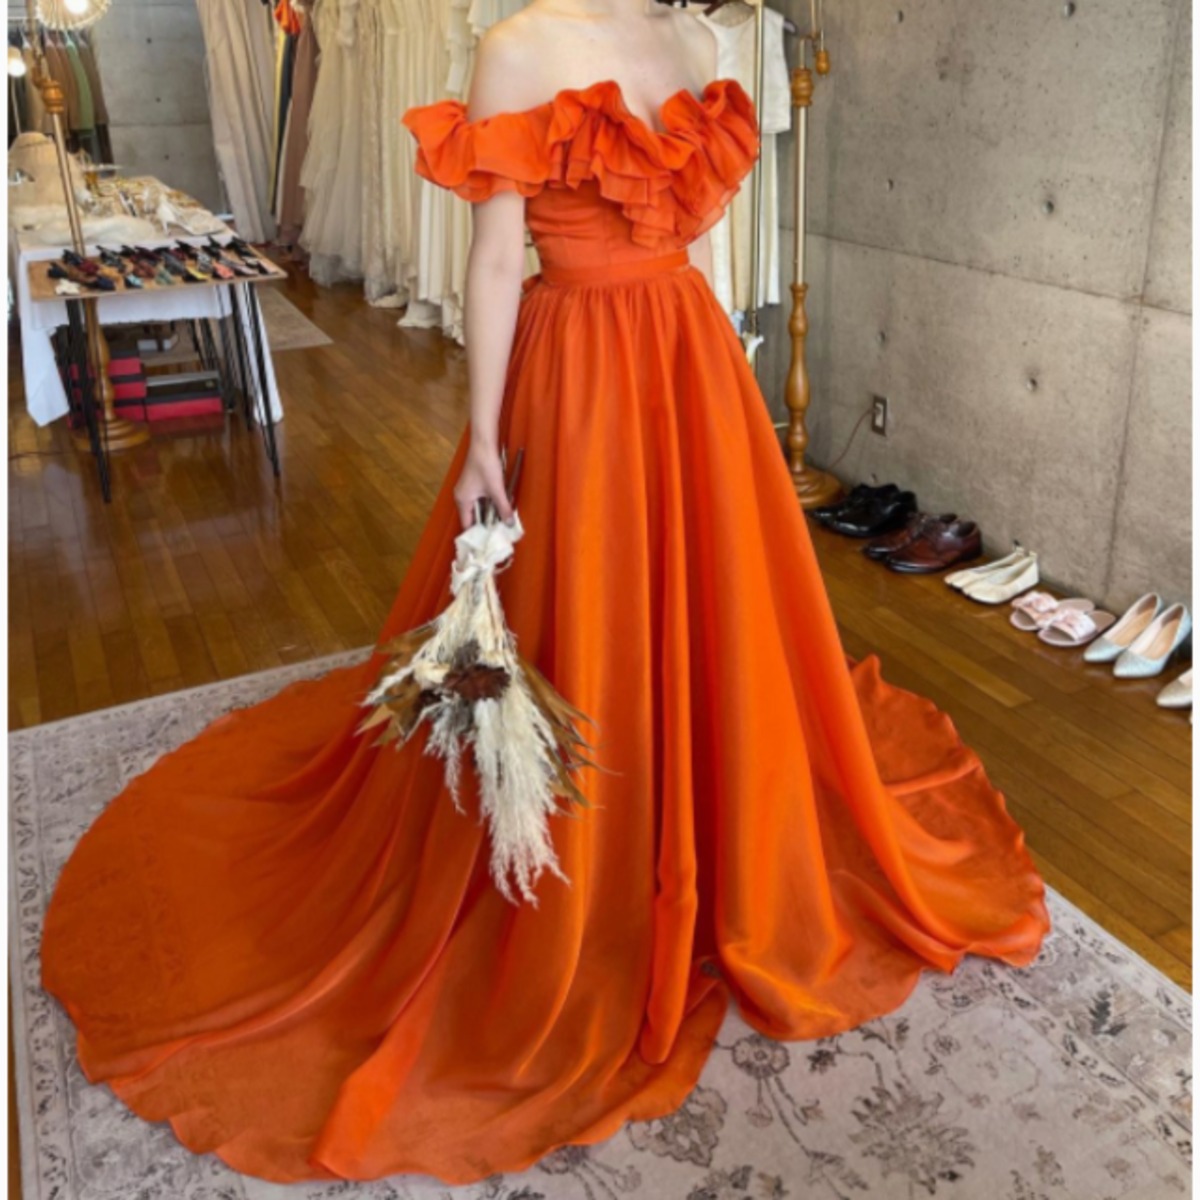 前撮りドレス  オレンジ ウェディングドレス  結婚式  人気上昇  Vネック